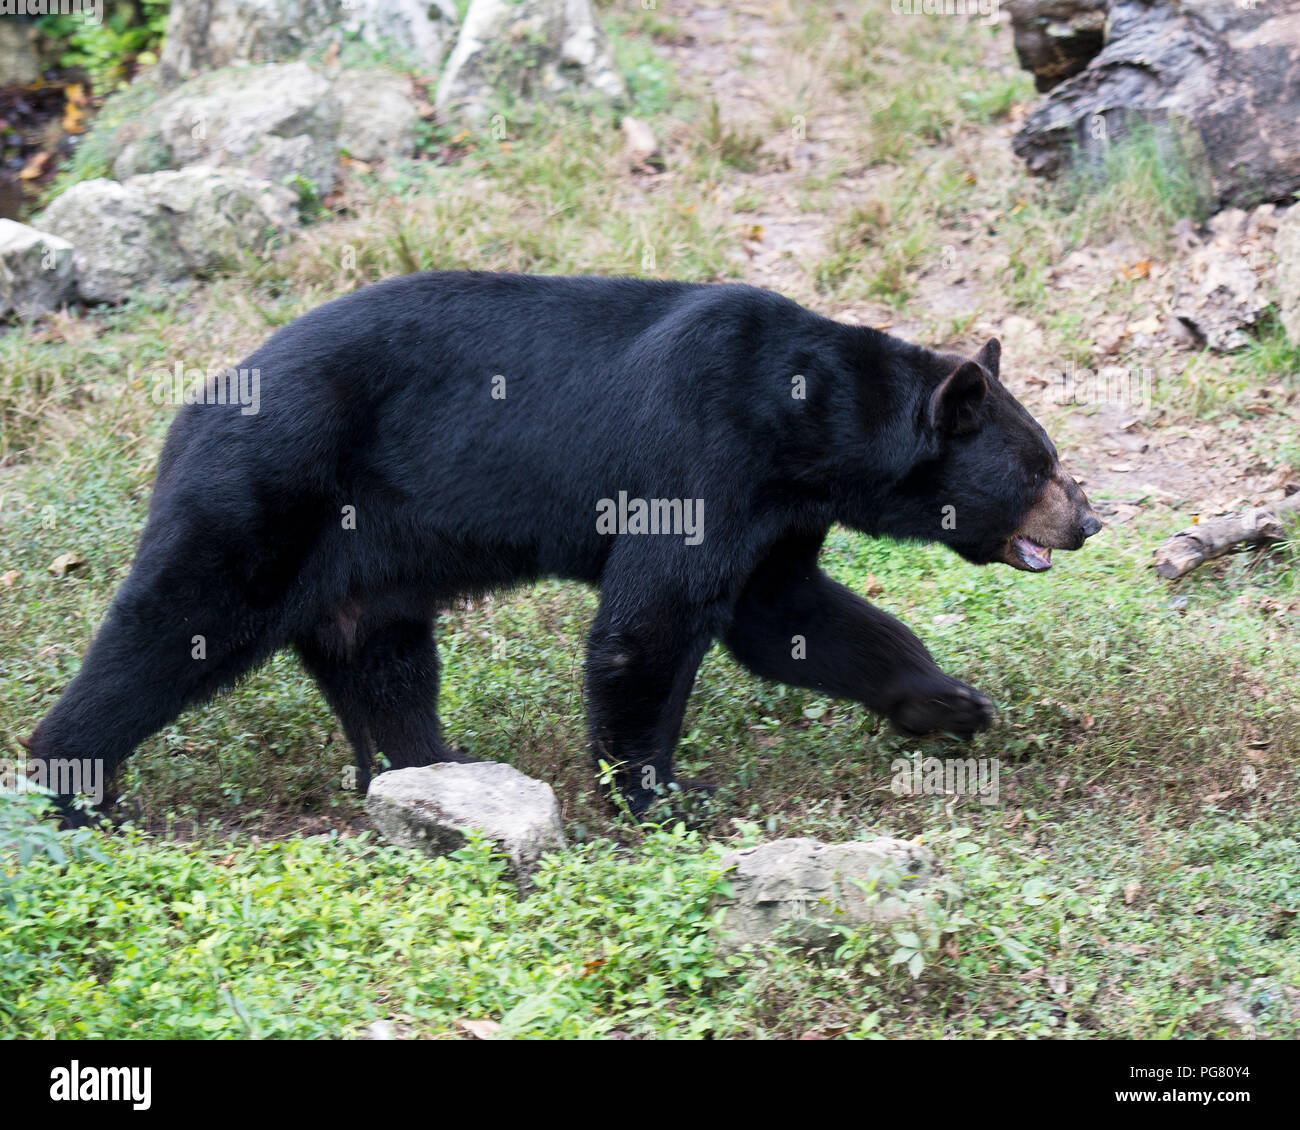 La recherche de nourriture animale de l'ours sur le terrain, l'affichage de pelage noir, museau, pattes, oreilles, yeux et profiter de son environnement et de l'environnement avec l'arrière-plan. Banque D'Images